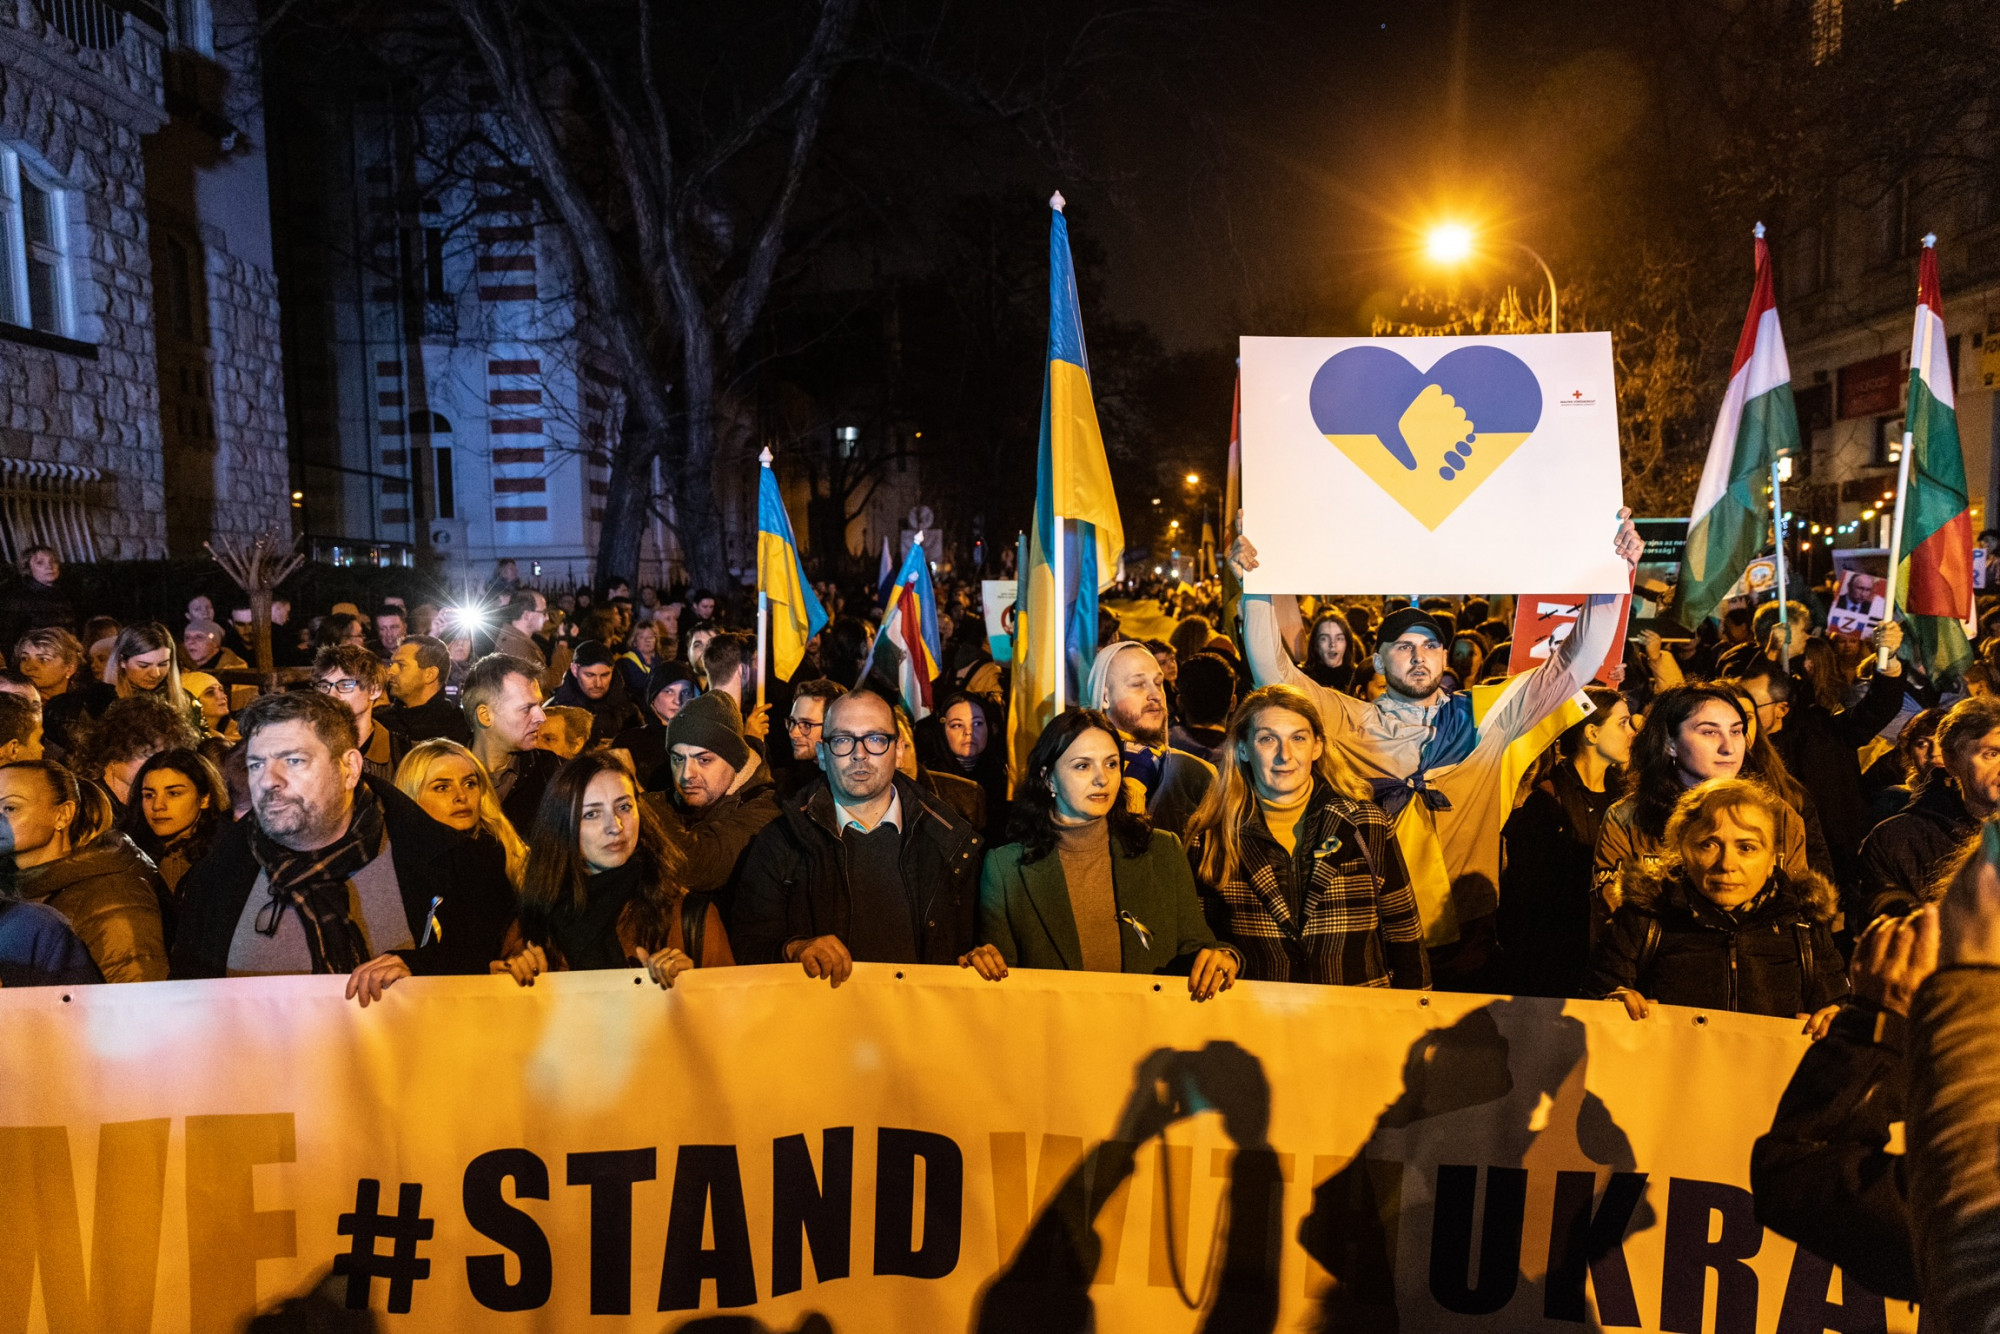 Béke csak akkor lesz, ha az utolsó orosz katona is kitakarodik Ukrajnából - több ezren tüntettek az orosz nagykövetségnél